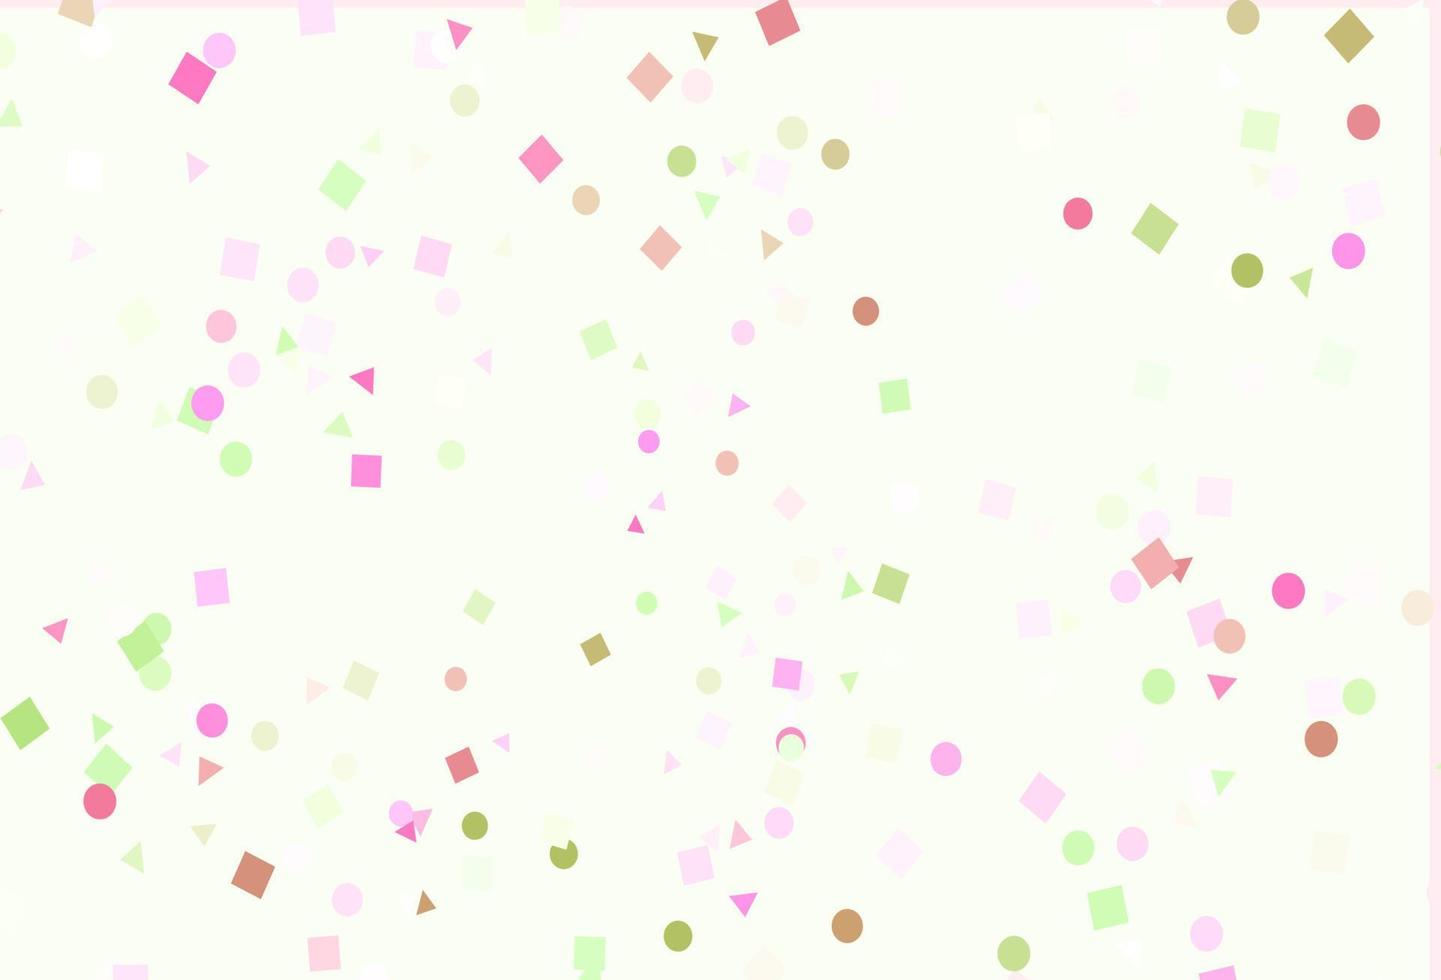 modello vettoriale rosa chiaro, verde in stile poligonale con cerchi.